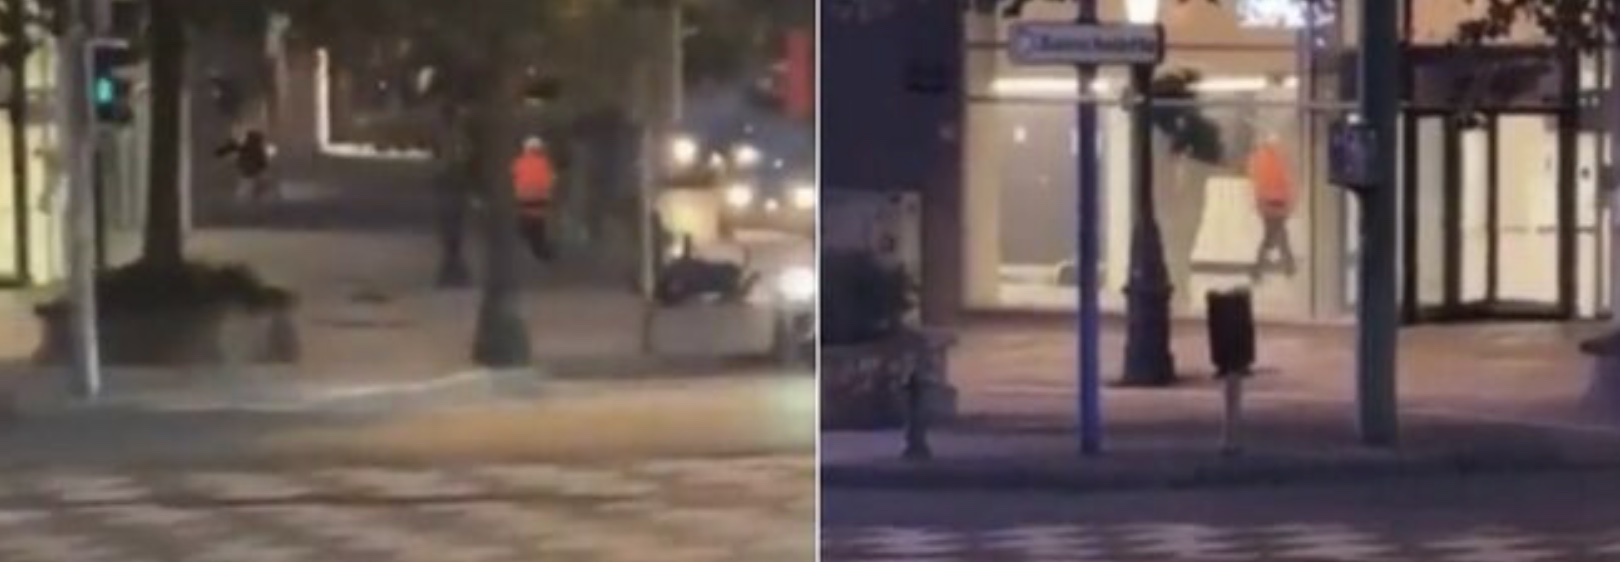 Împușcături la Bruxelles, doi morți și unul rănit: Urmăm traseul terorismului